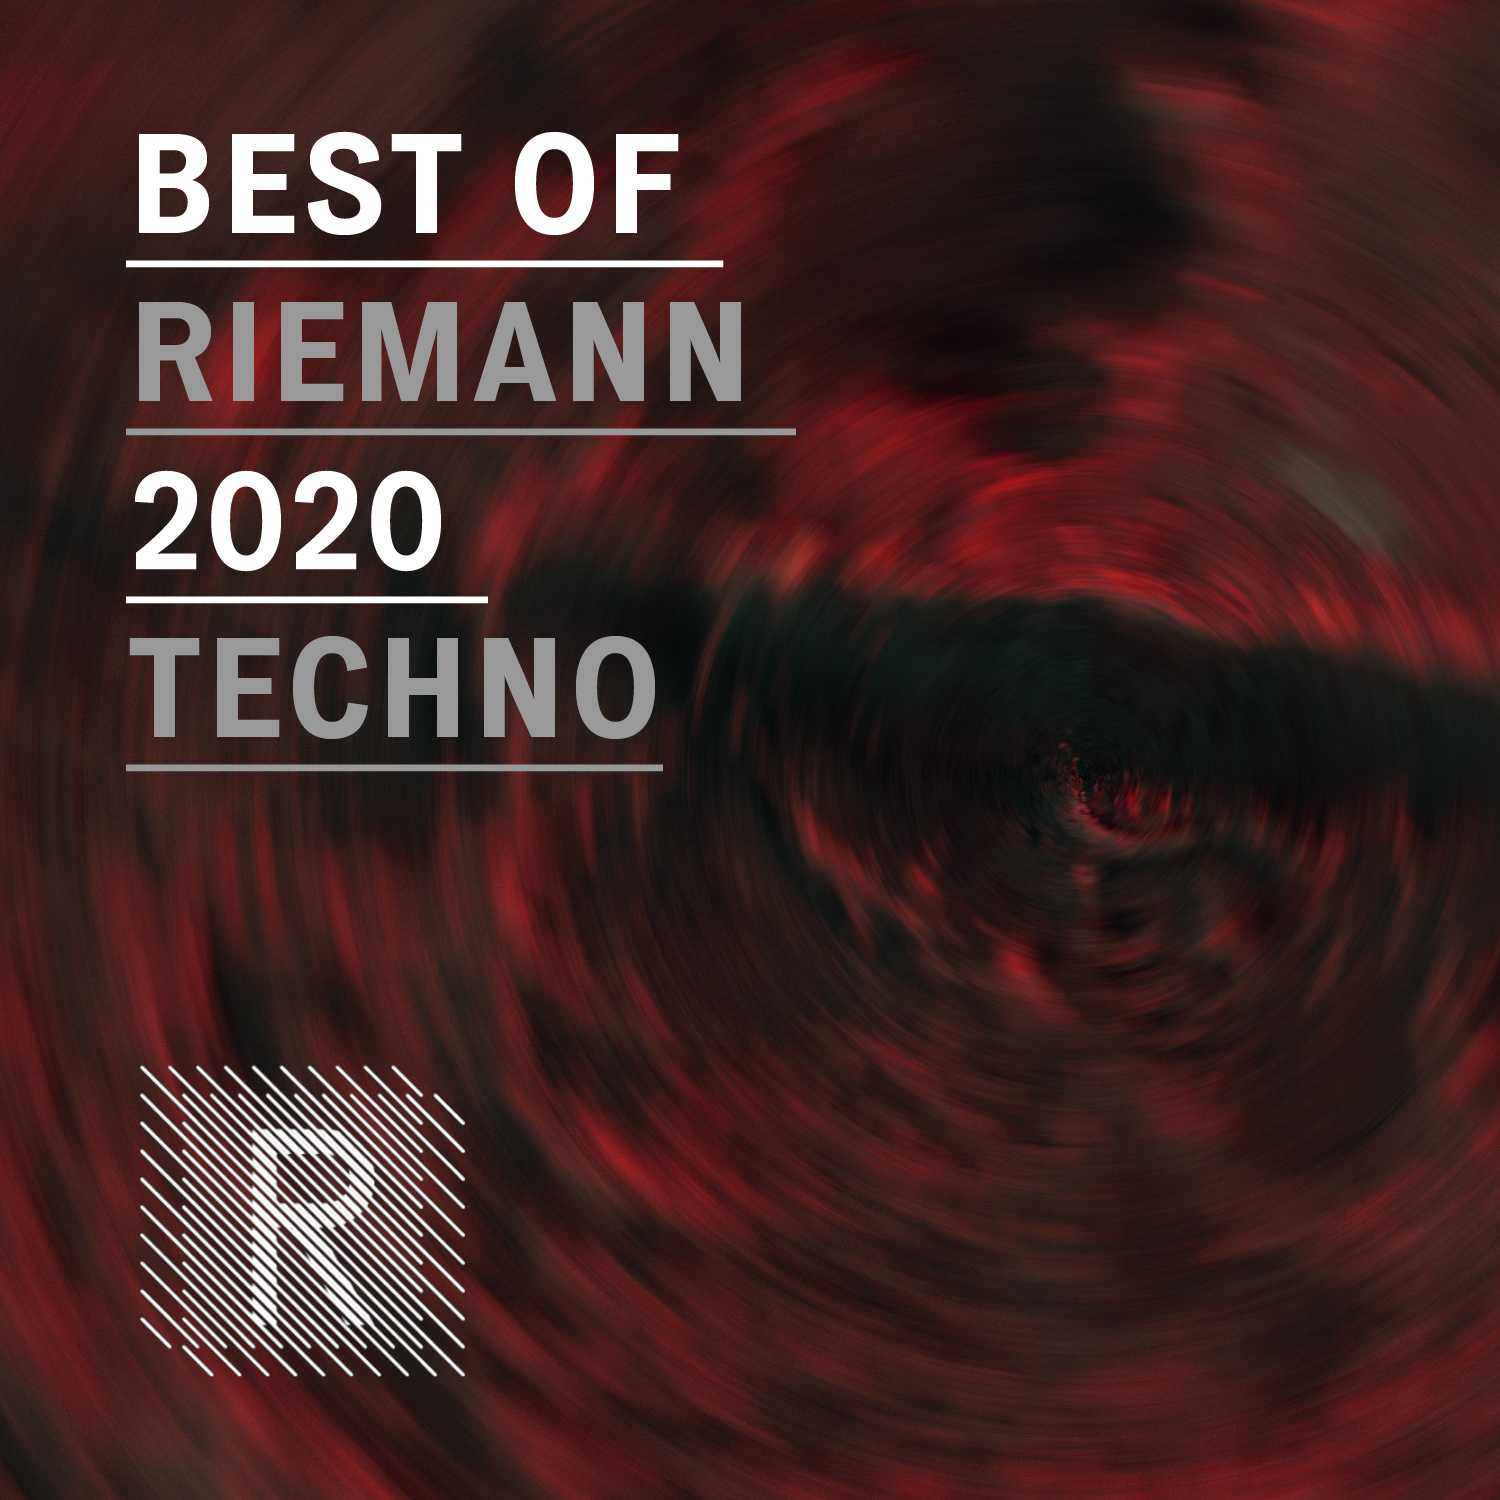 Riemann - Best of Riemann 2020 Techno